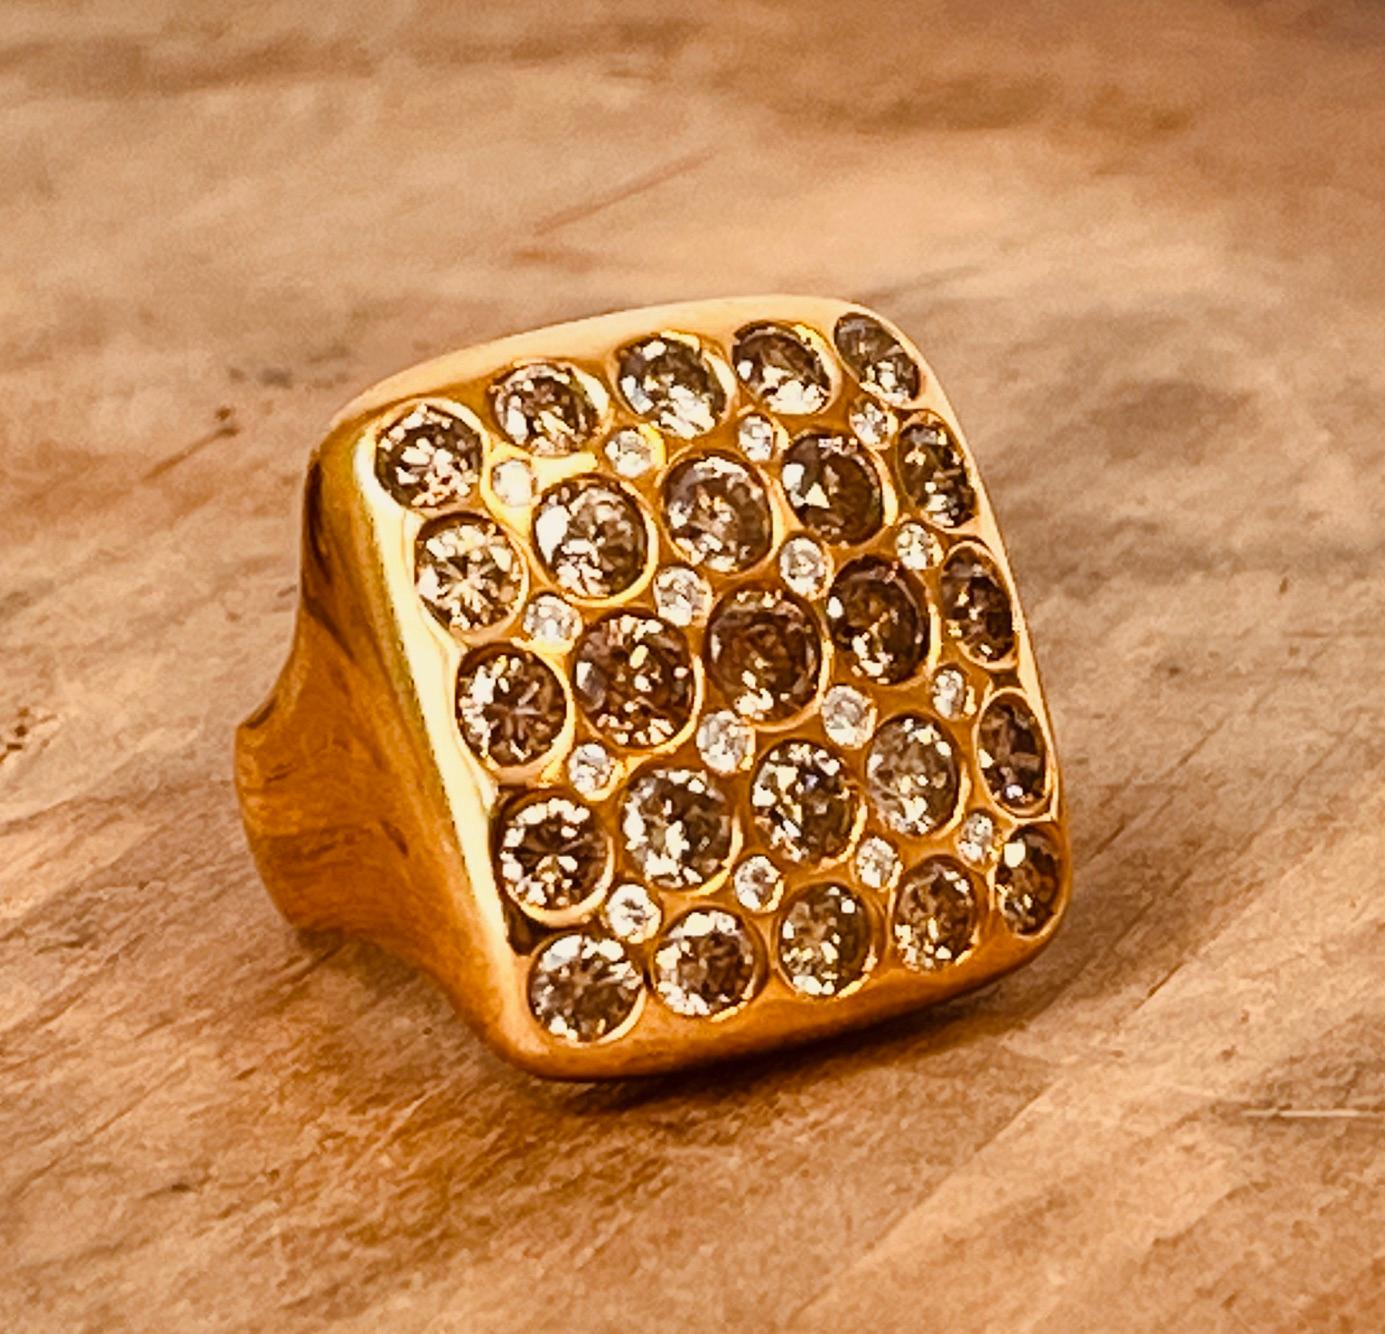 GAVELLO Ring aus 18 Karat Gelbgold in Kissenform, besetzt mit braunen, hellbraunen und weißen Diamanten. Größe des Kissens: 27mm x 28mm (2,7cm x 2,8cm). Das Gesamtgewicht der Diamanten beträgt etwa 8cts. Bruttogewicht von 29 Gramm. Auf den Schultern